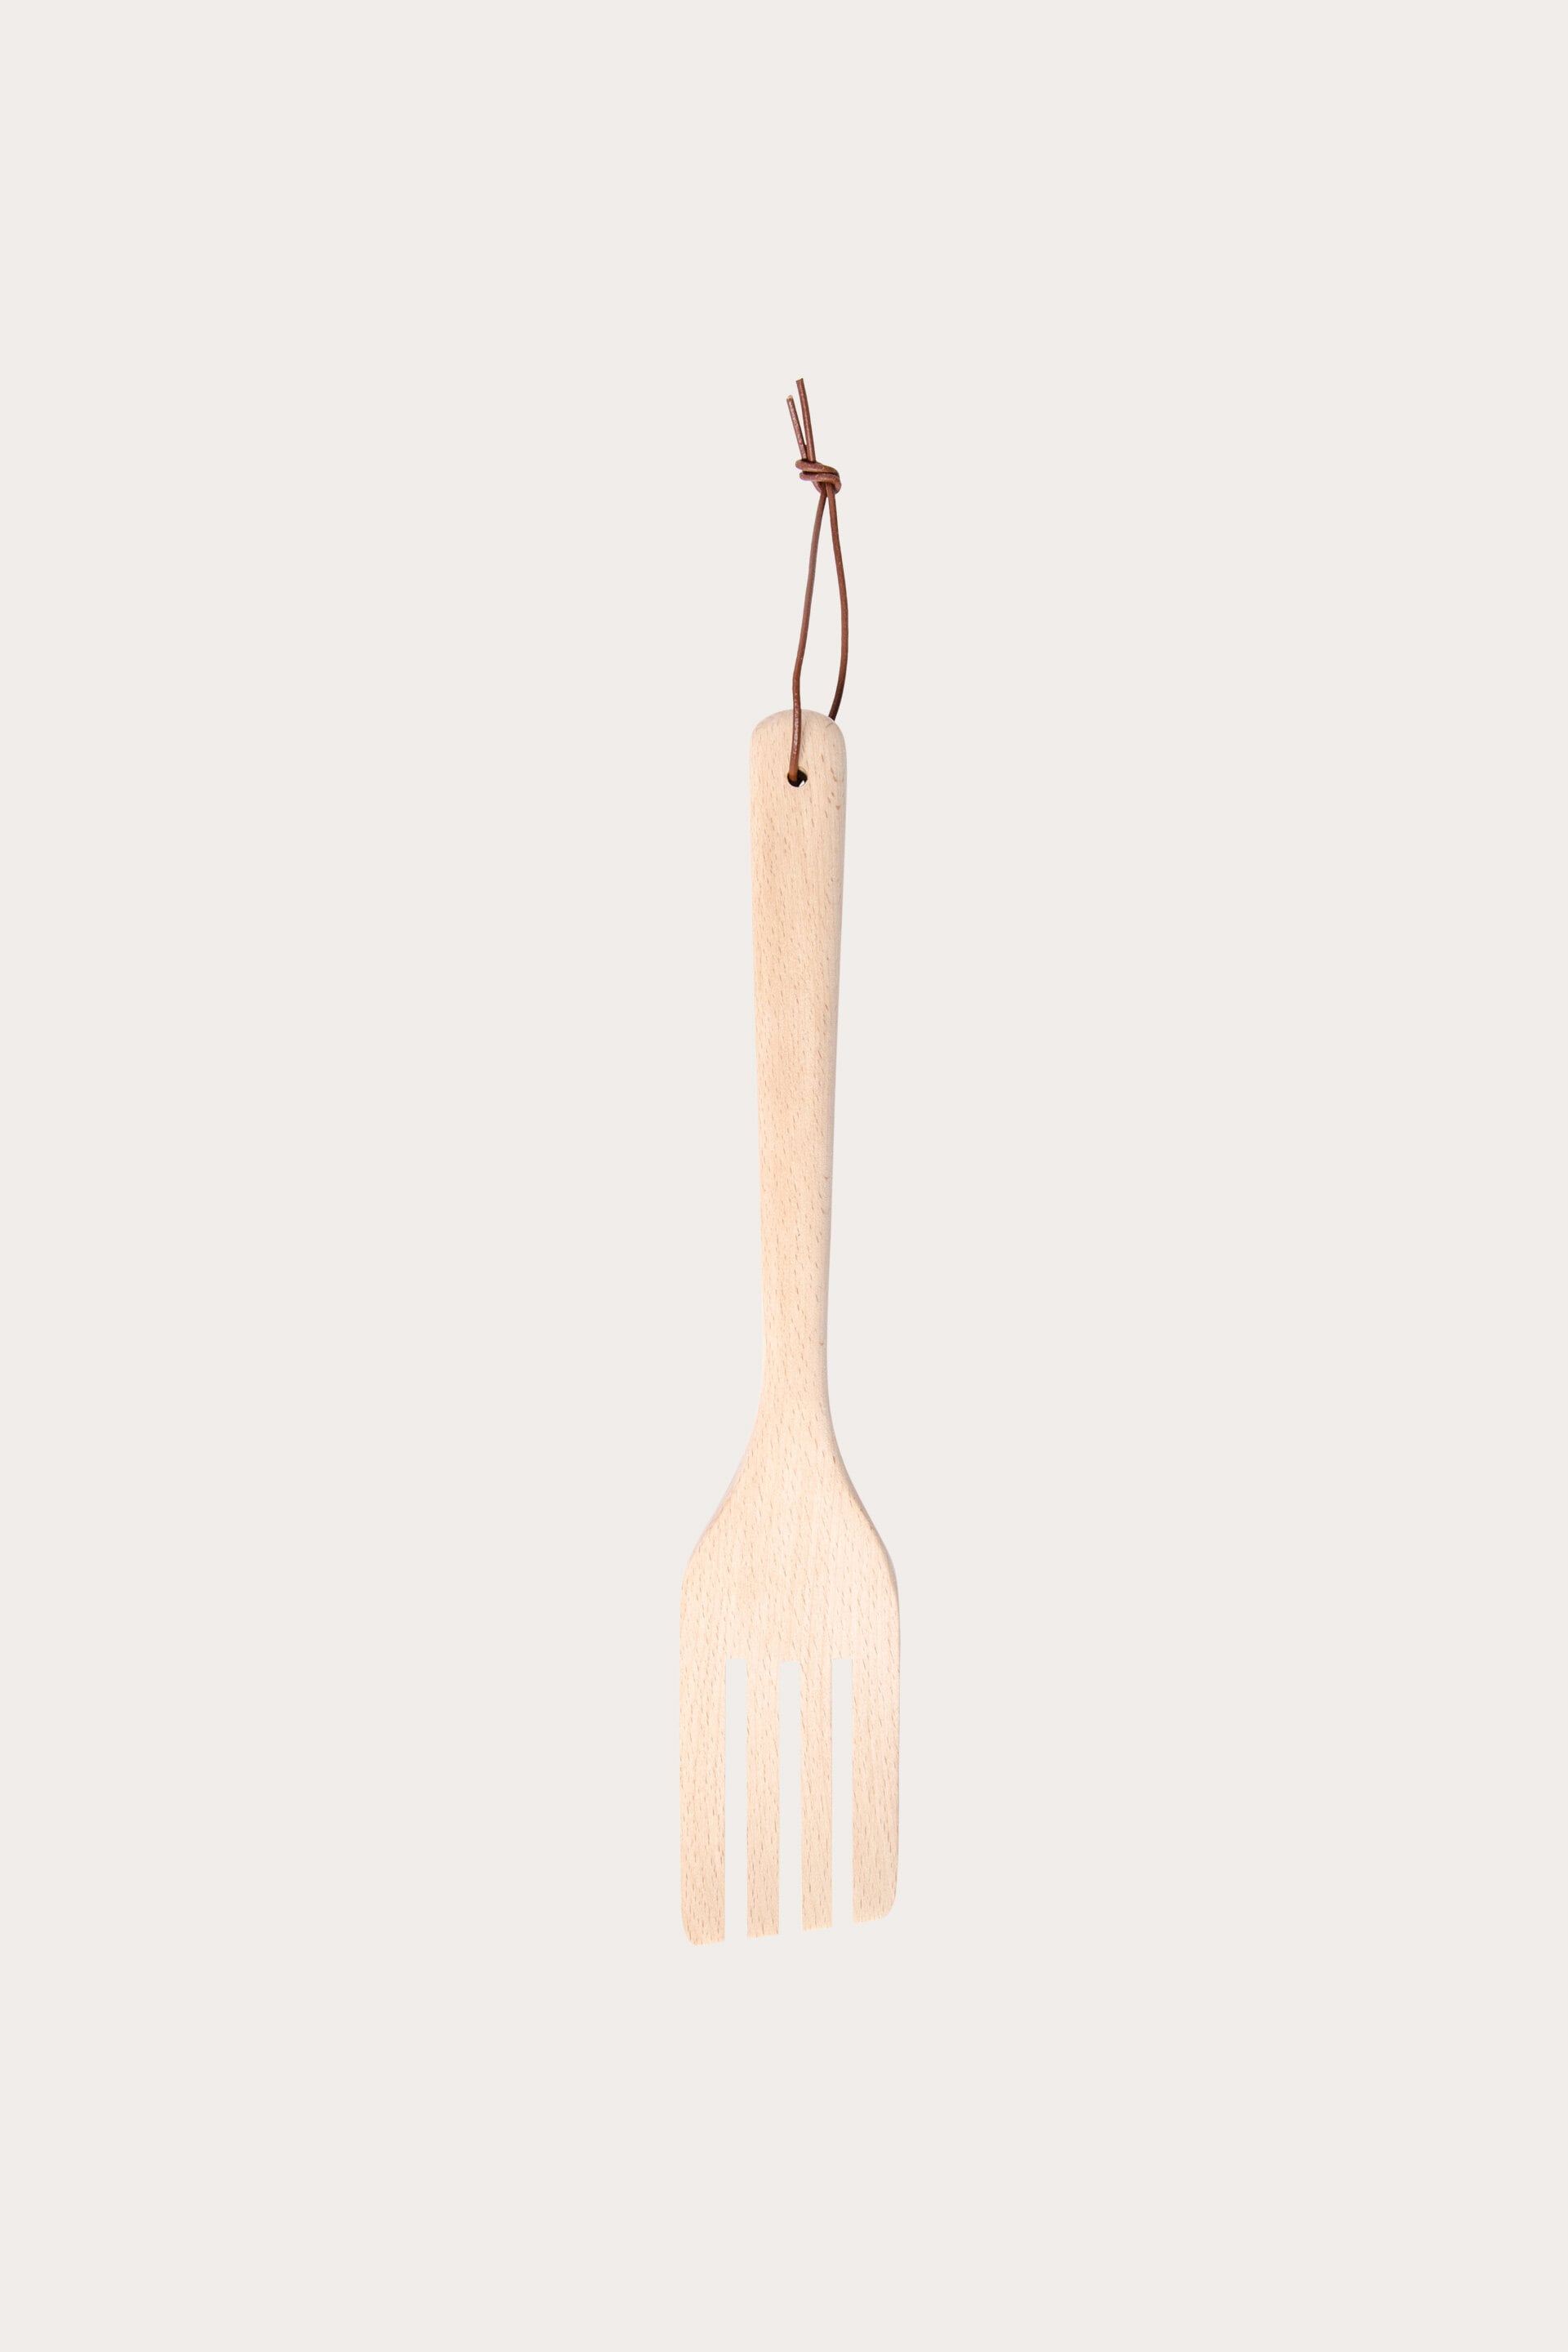 COOK wooden fork